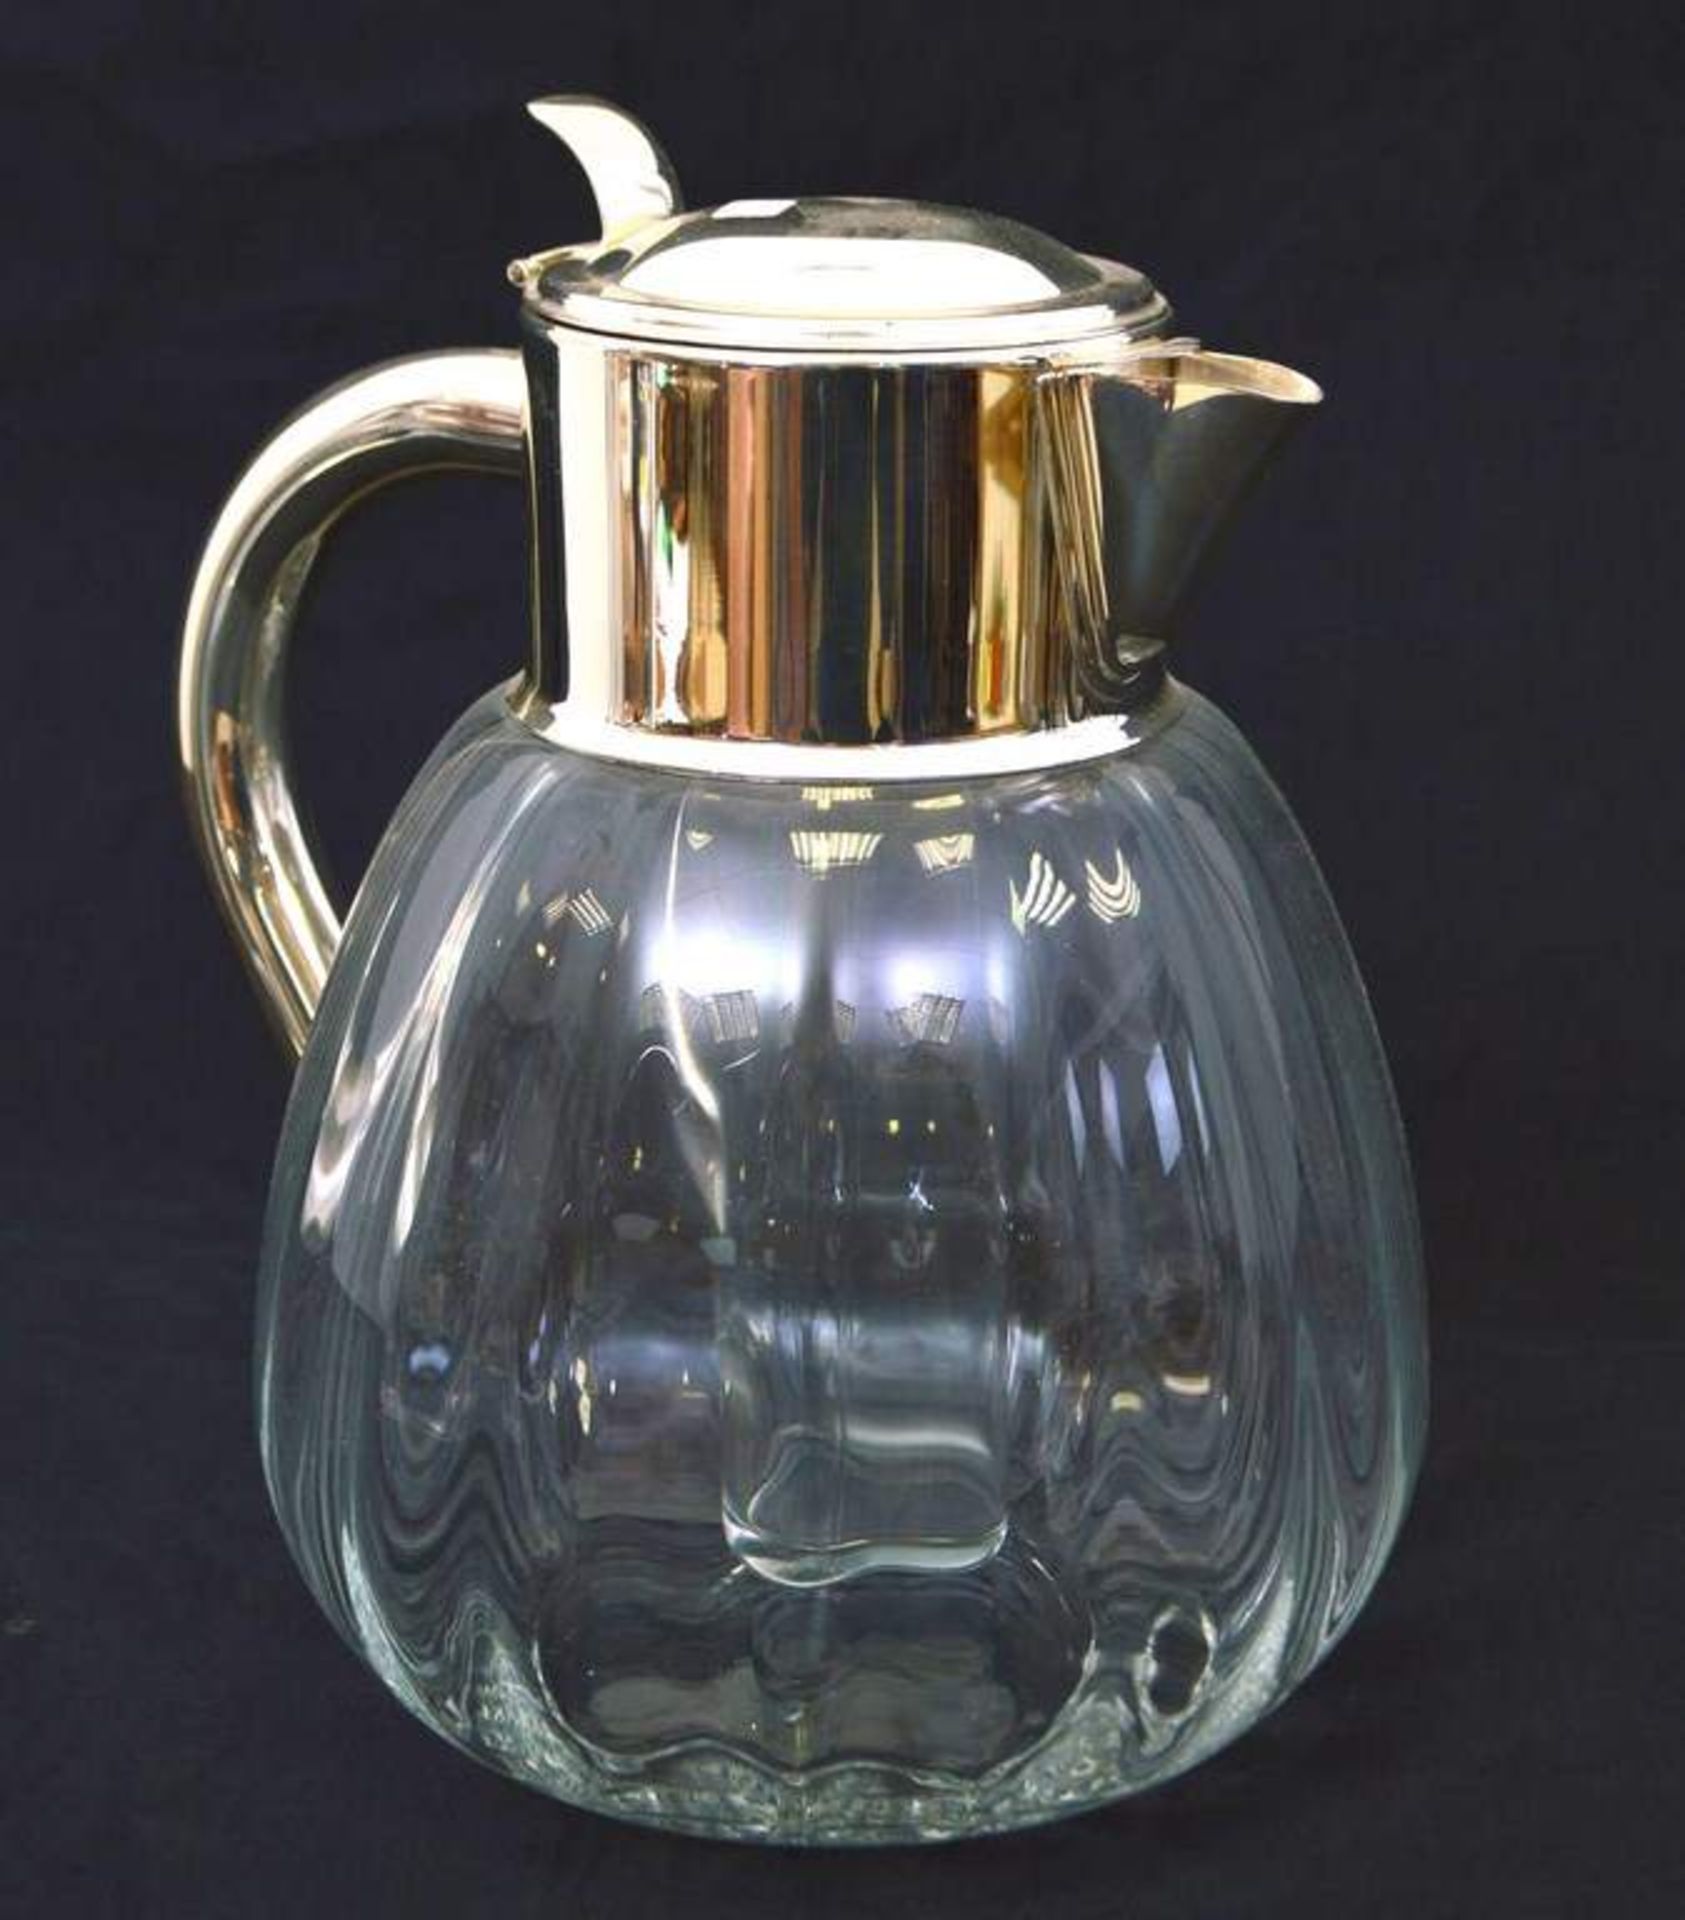 Saftkrug farbl. Glas, Ausgießer und Griff Weißmetall, innen mit farbl. Glaszylinder, H 24 cm